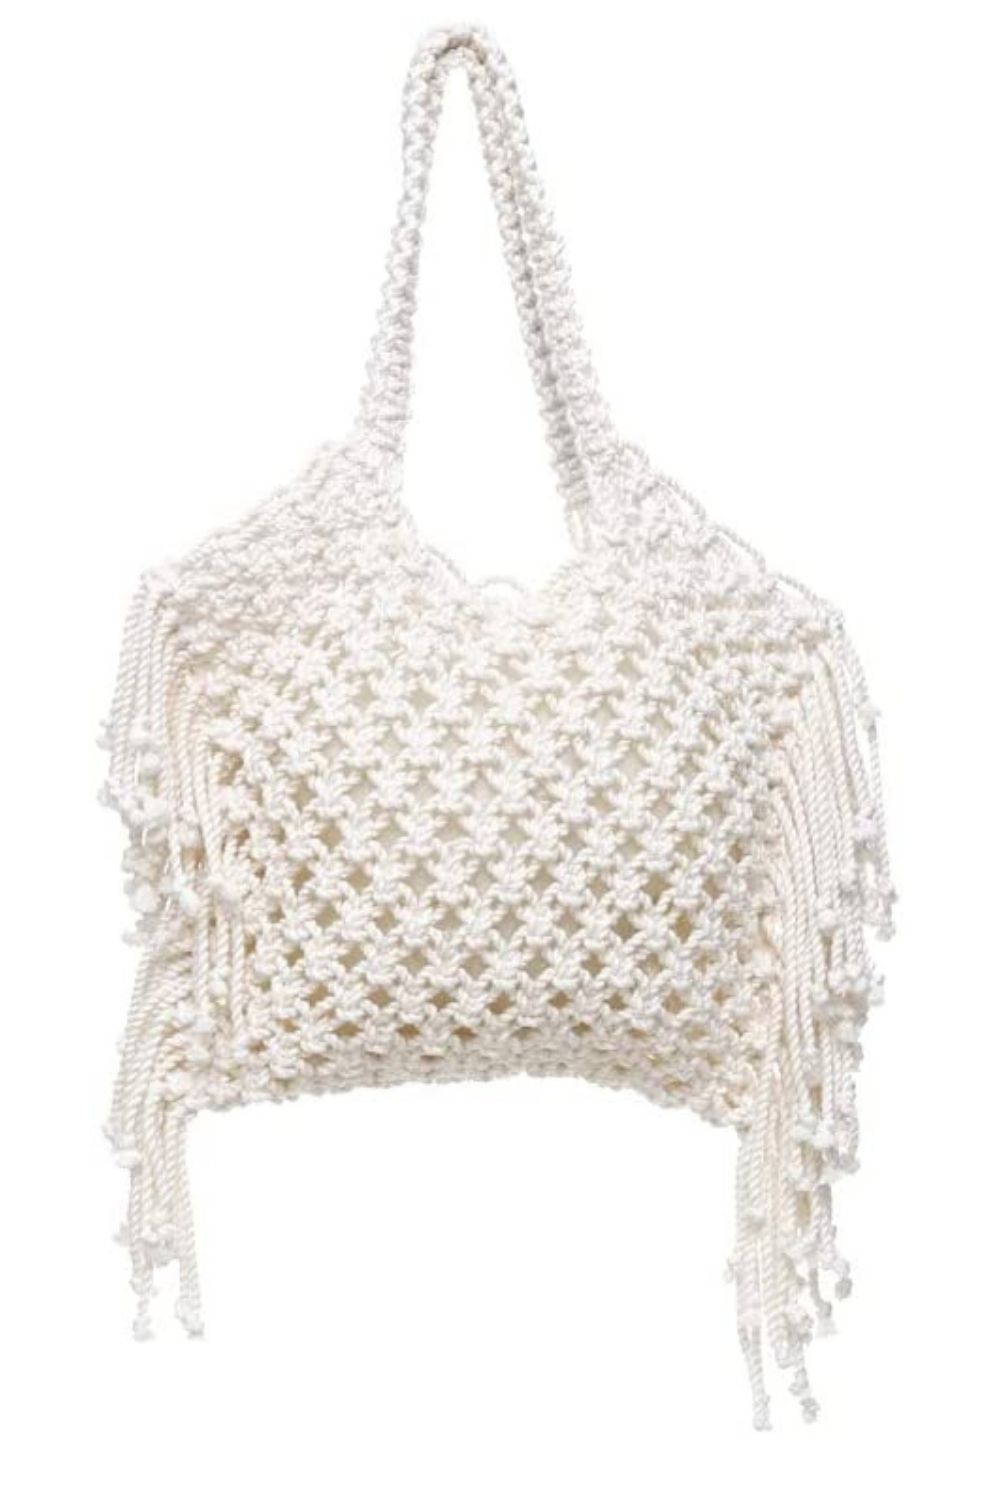 Crochet Bag Amazon